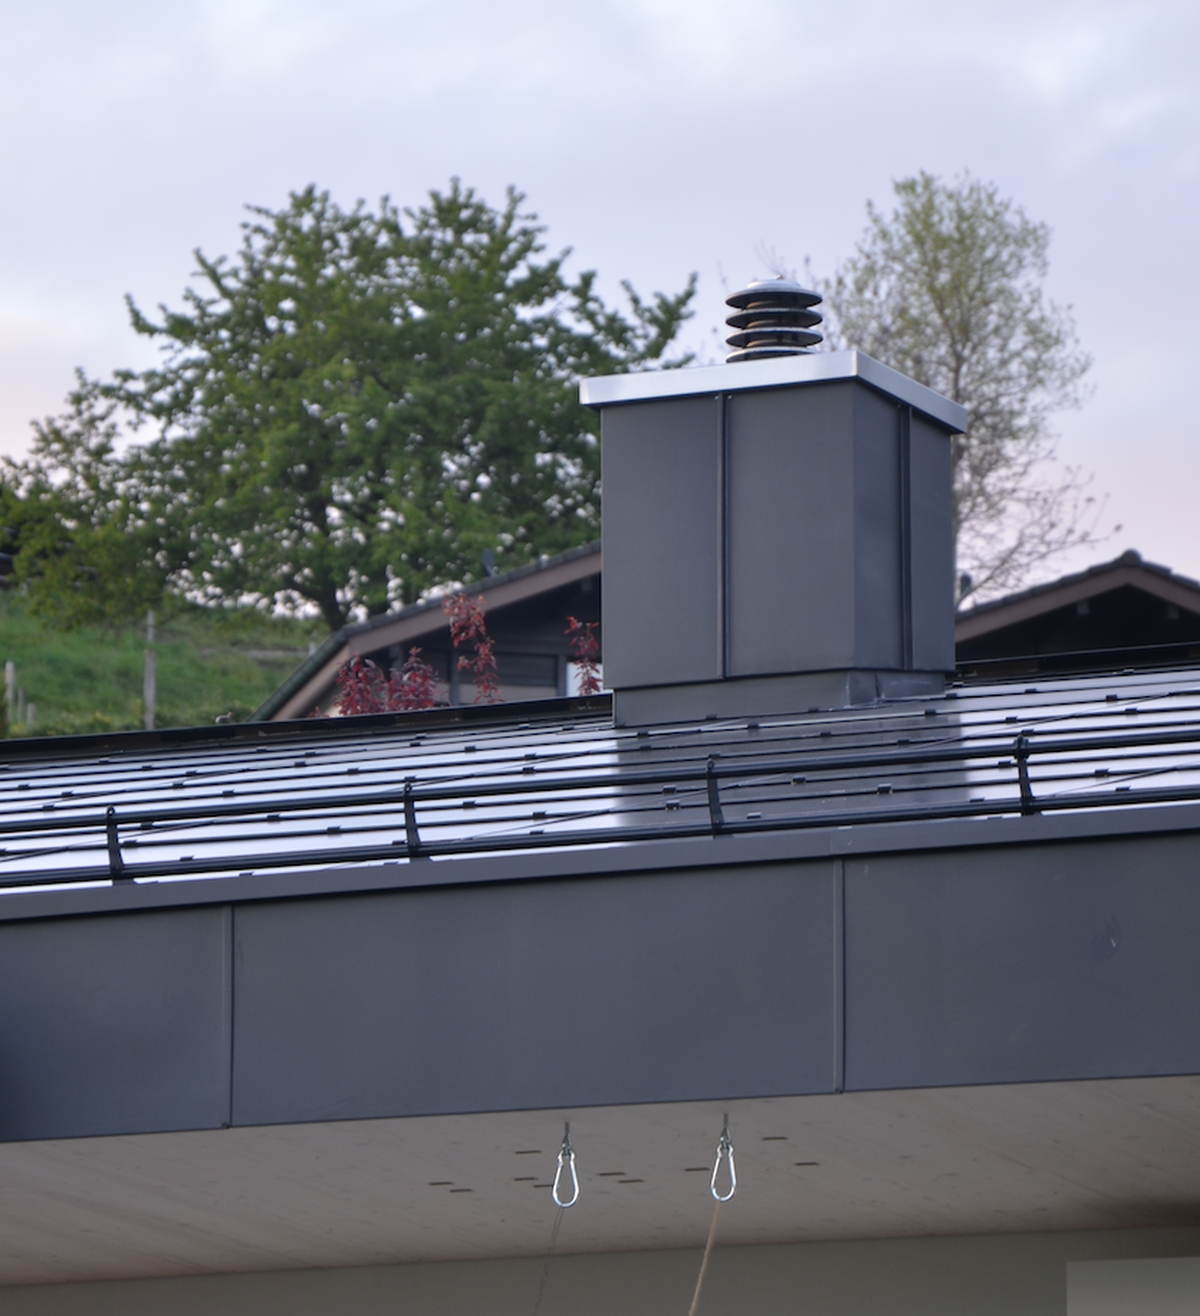 So bringt man in Luzern eine nachhaltige Sanierung unter Dach und Fach